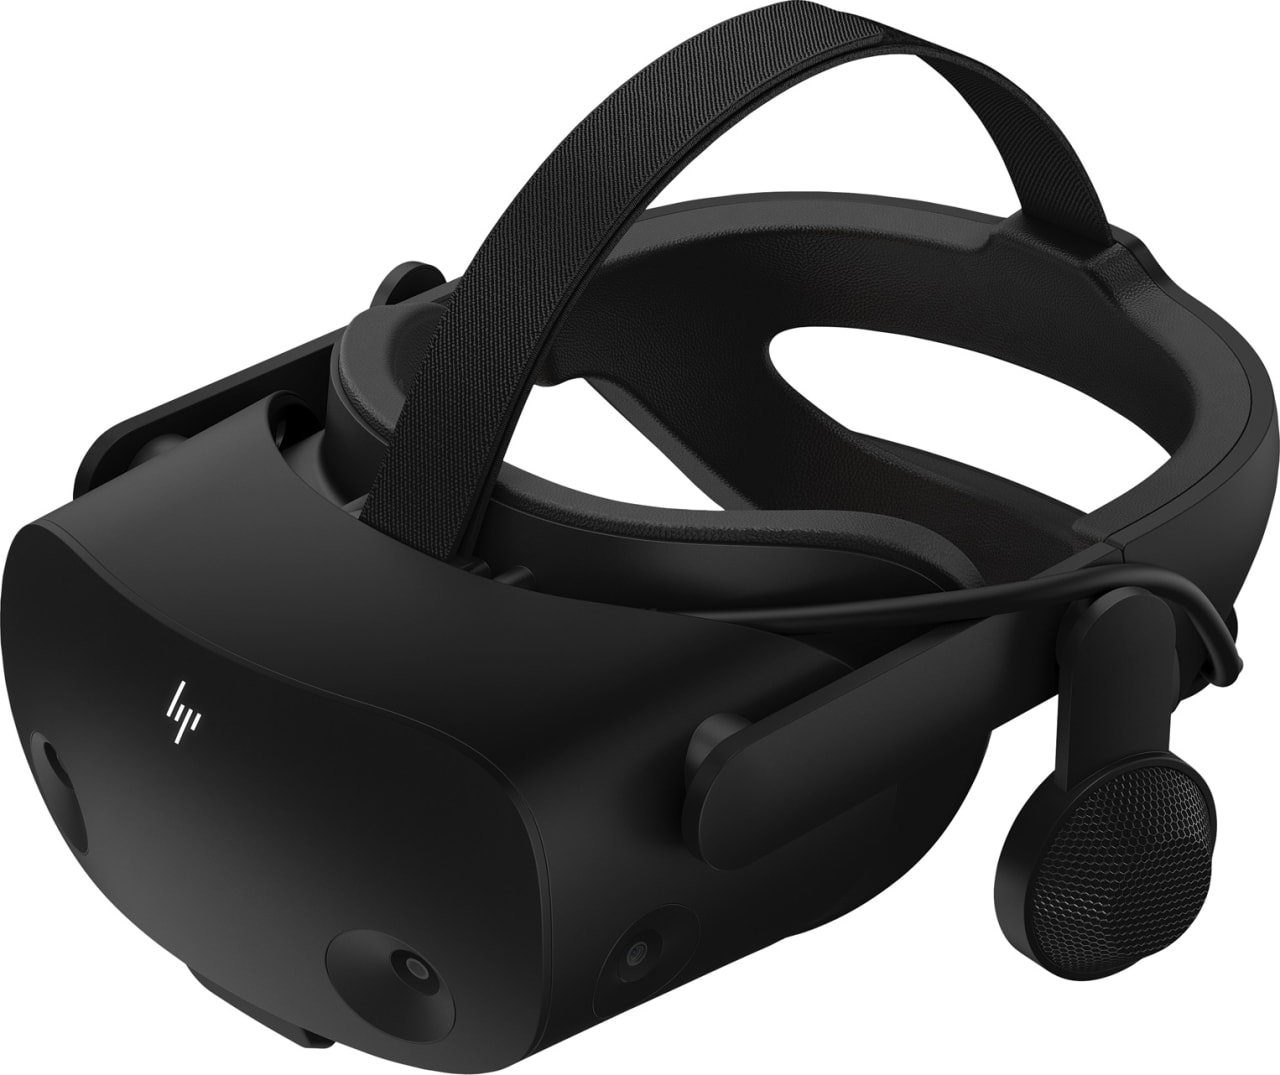 Negro Casco de realidad virtual HP Reverb G2 Omnicept Edition (incluye 2 controladores de movimiento).4